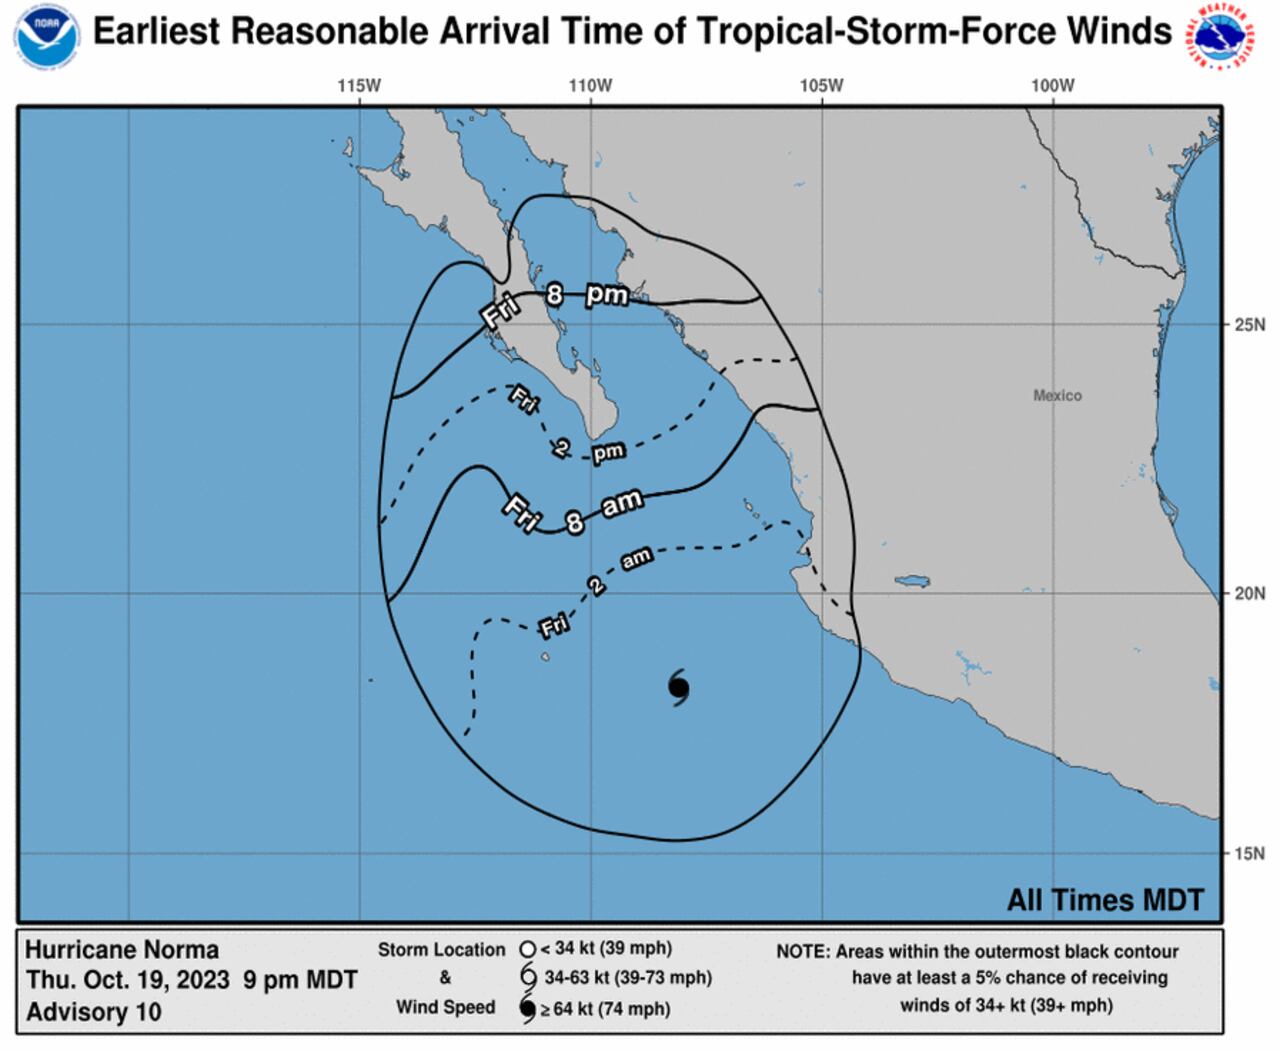 Norma tocaría el extremo sur de Baja California el sábado, aunque con menor velocidad en sus vientos, según el pronóstico del NHC.